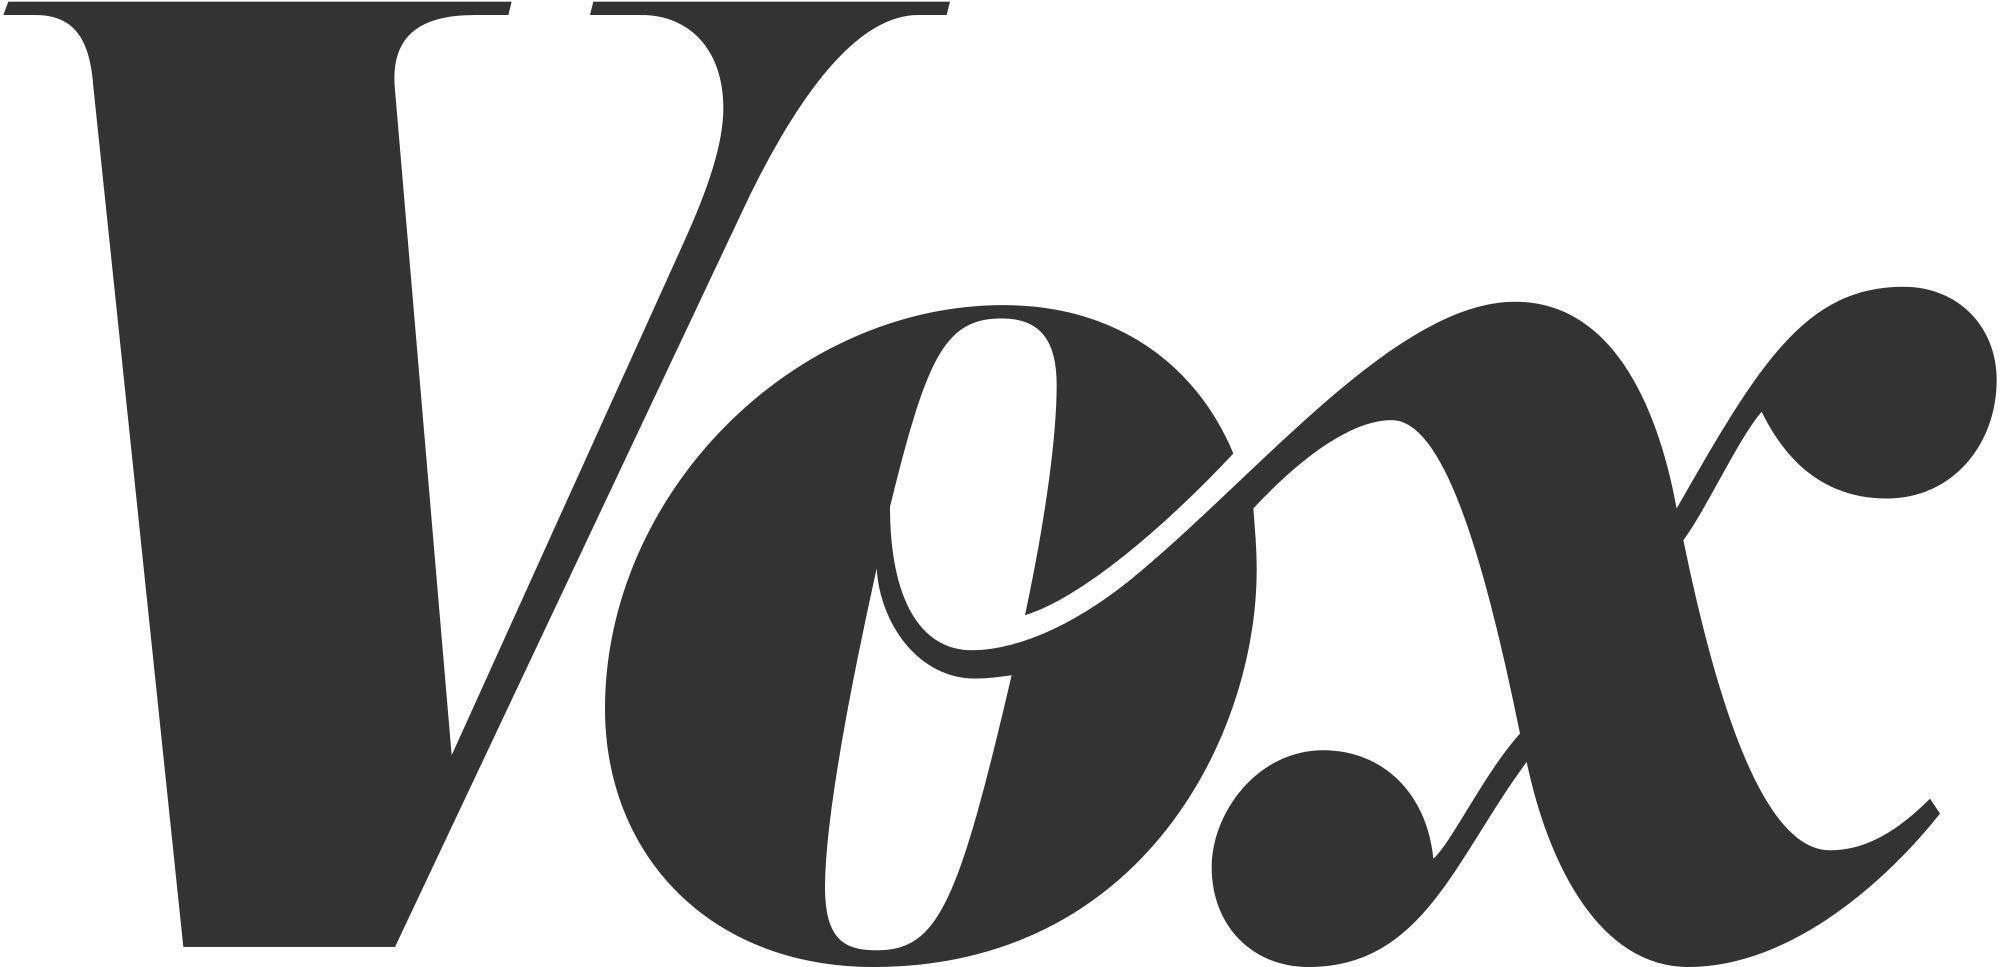 الطباعة - ما هي فئة الخط التي ينتمي إليها شعار Vox؟ - التصميم الجرافيكي ...